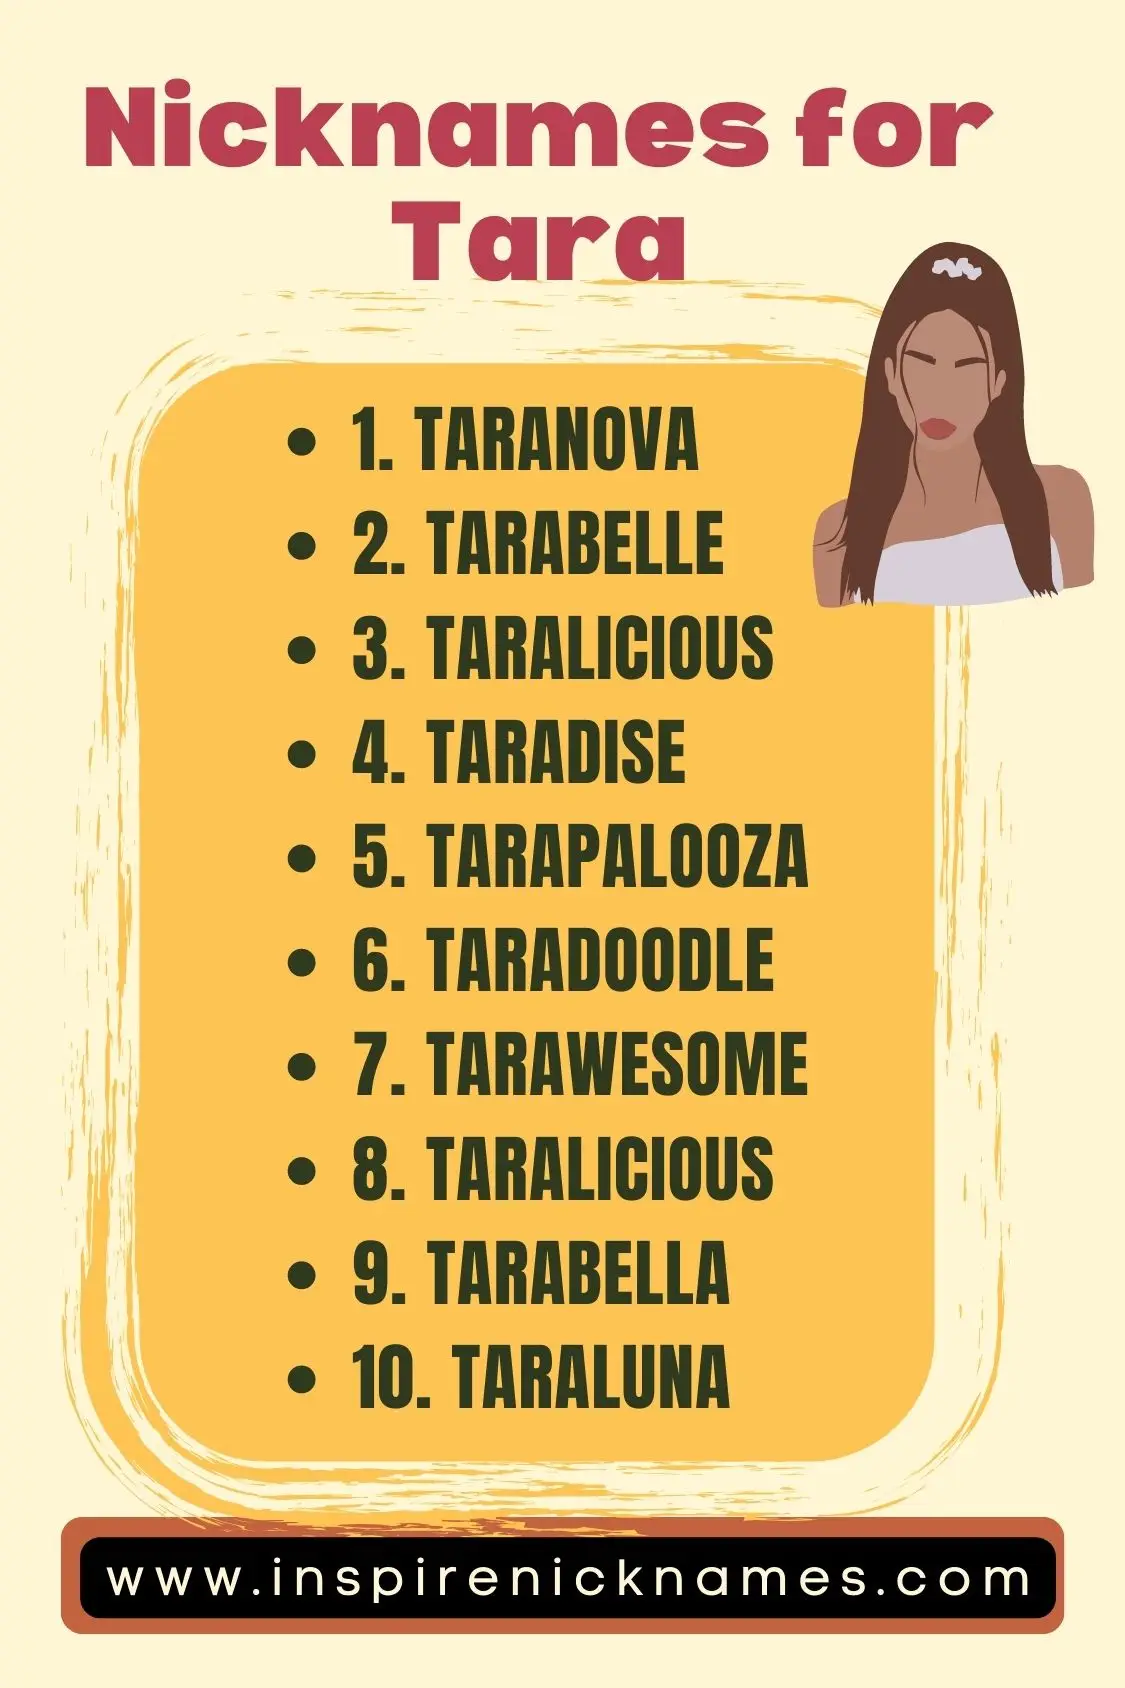 nicknames for Tara list ideas